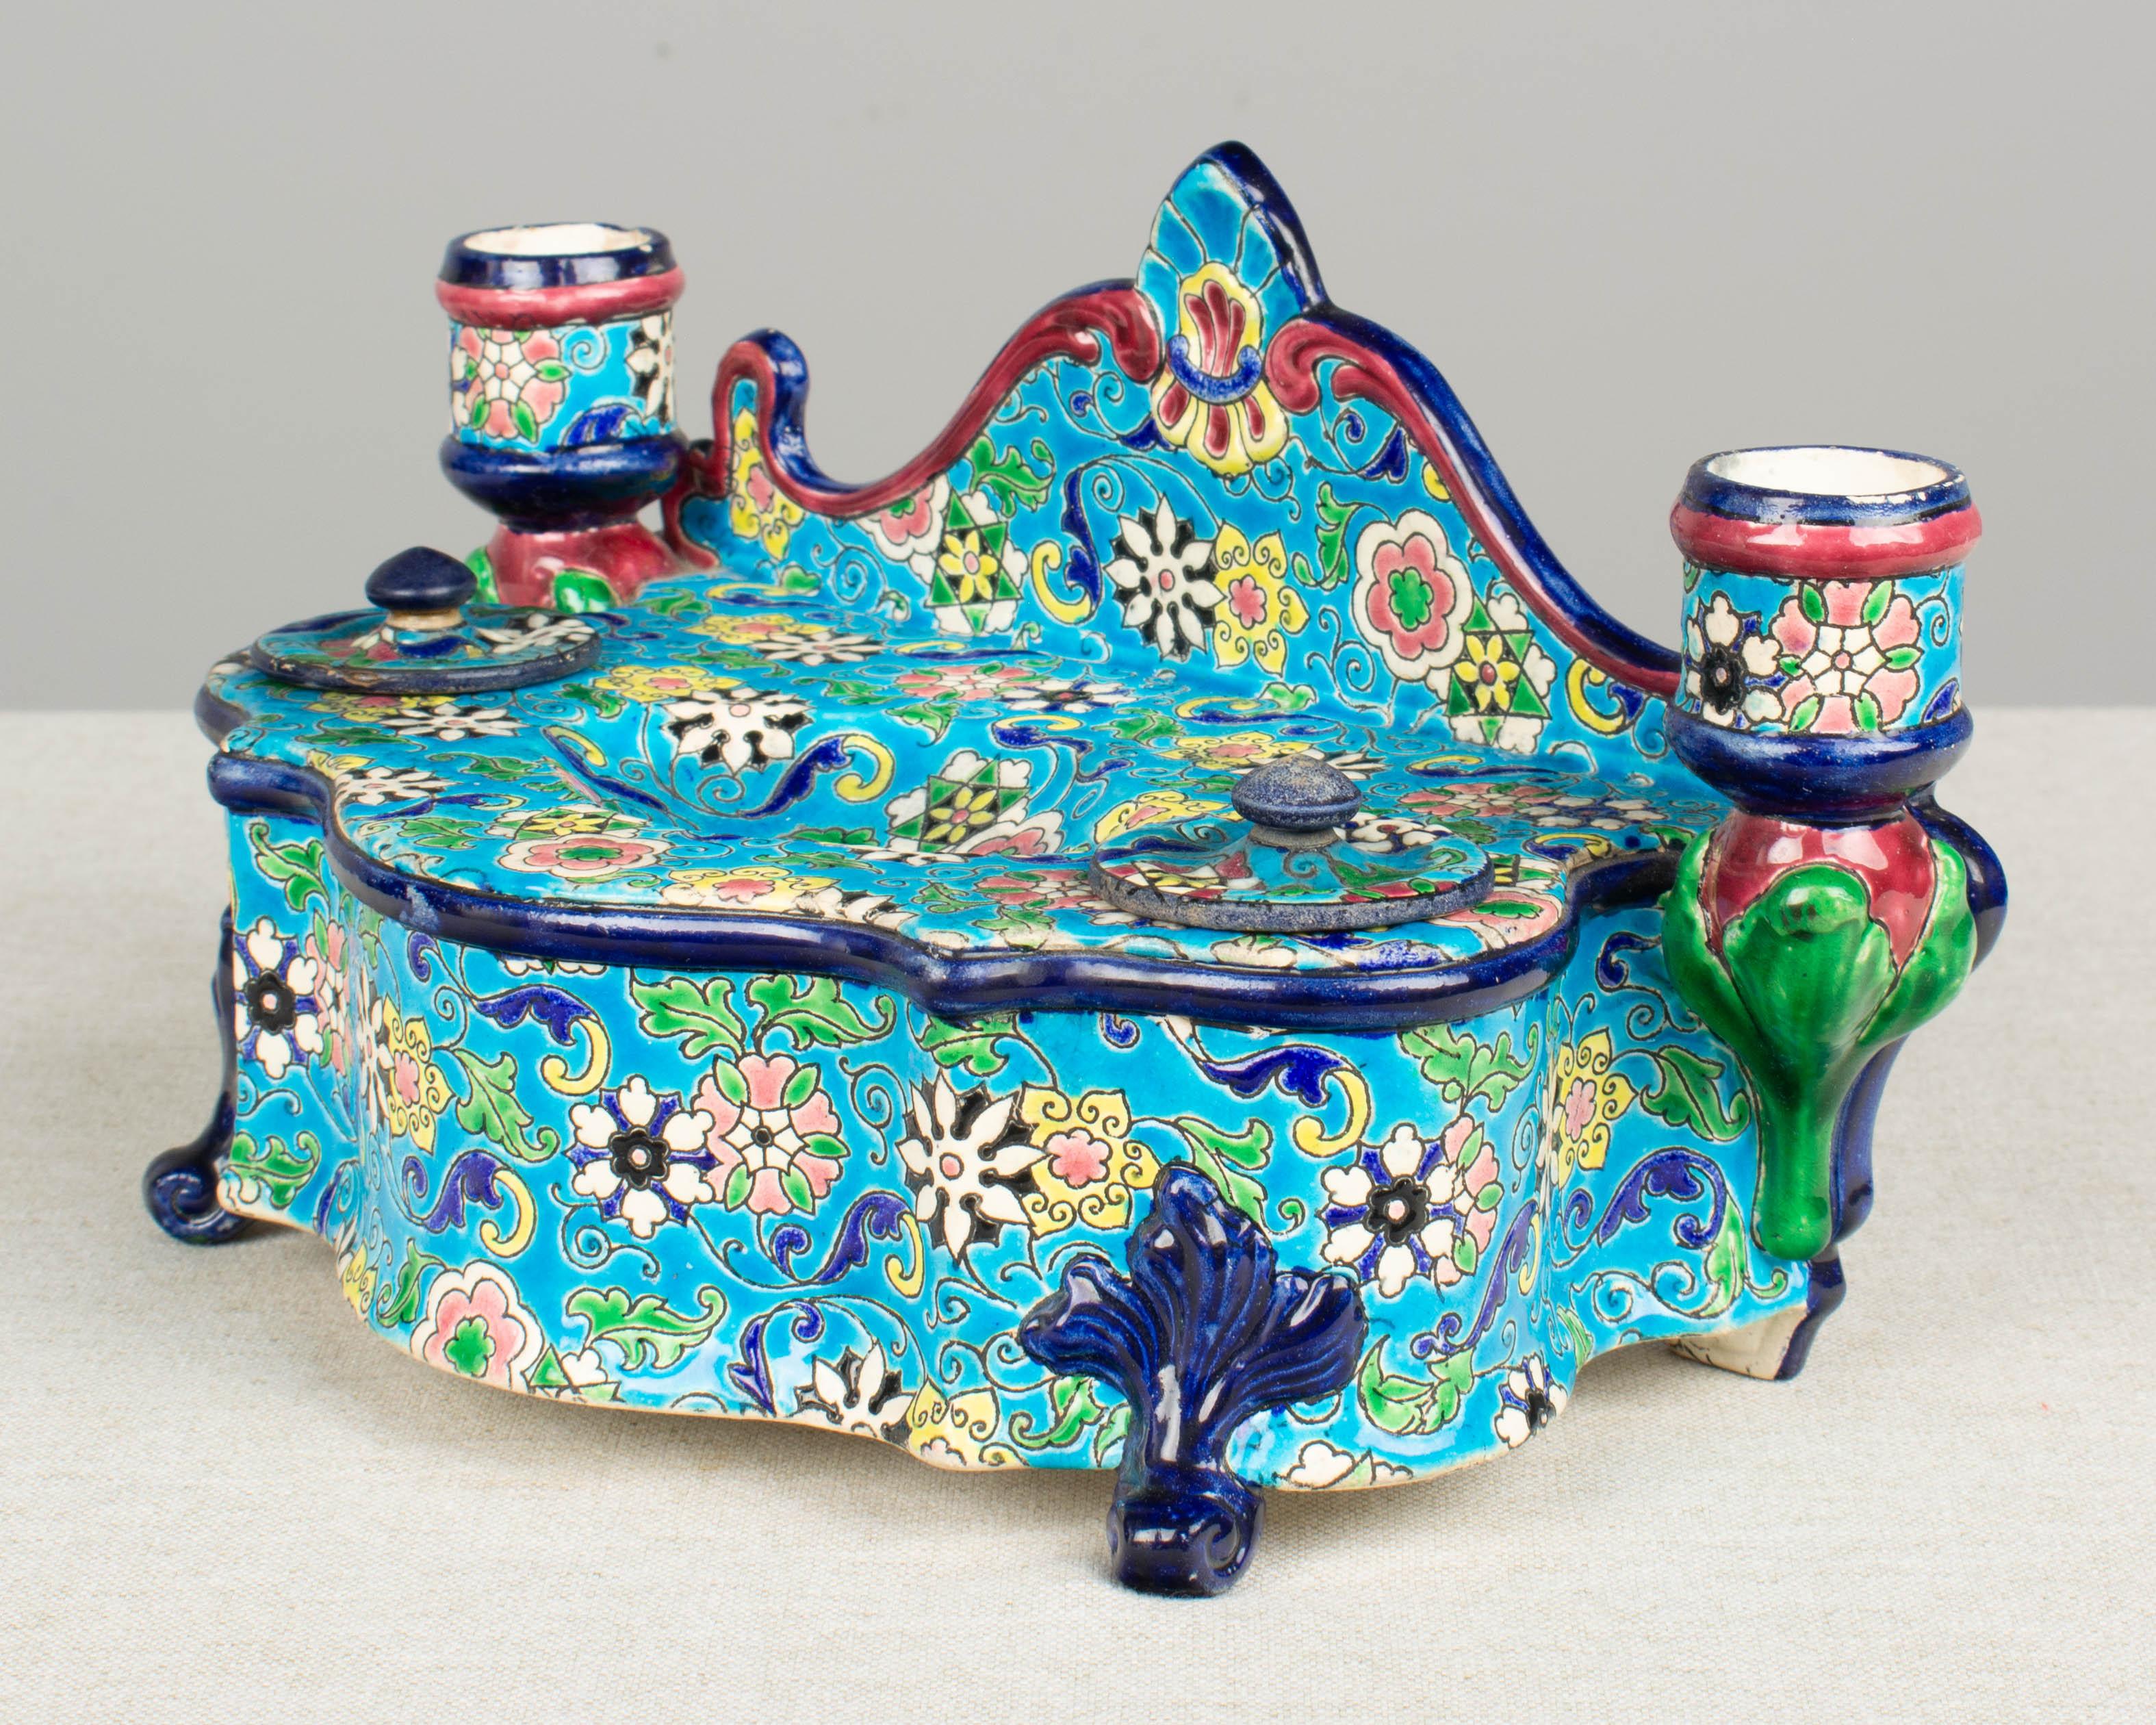 Ensemble de bureau en céramique Longwy du XIXe siècle, avec encriers et chandeliers. Magnifique motif floral en émail cloisonné avec de vibrants bleu-rose, rose, vert et jaune sur un fond turquoise brillant. Il n'y a pas d'encarts pour les pots